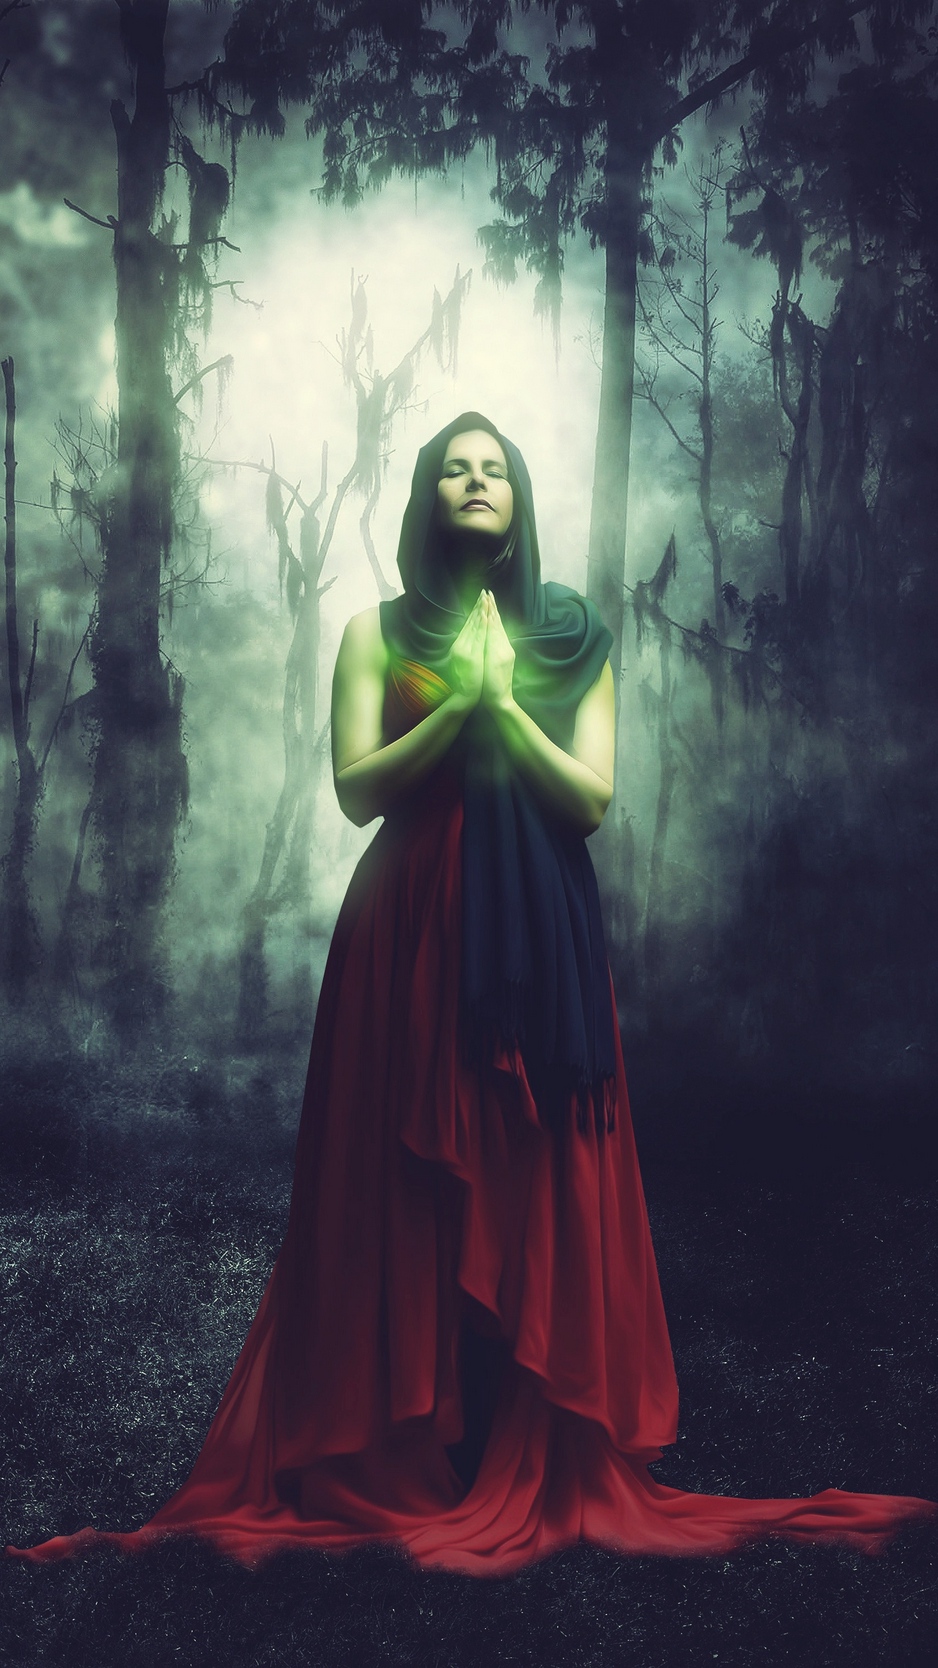 Wallpaper Woman, Magician, Magic, Forest, Surreal - Magical Surreal Fantasy Art - HD Wallpaper 